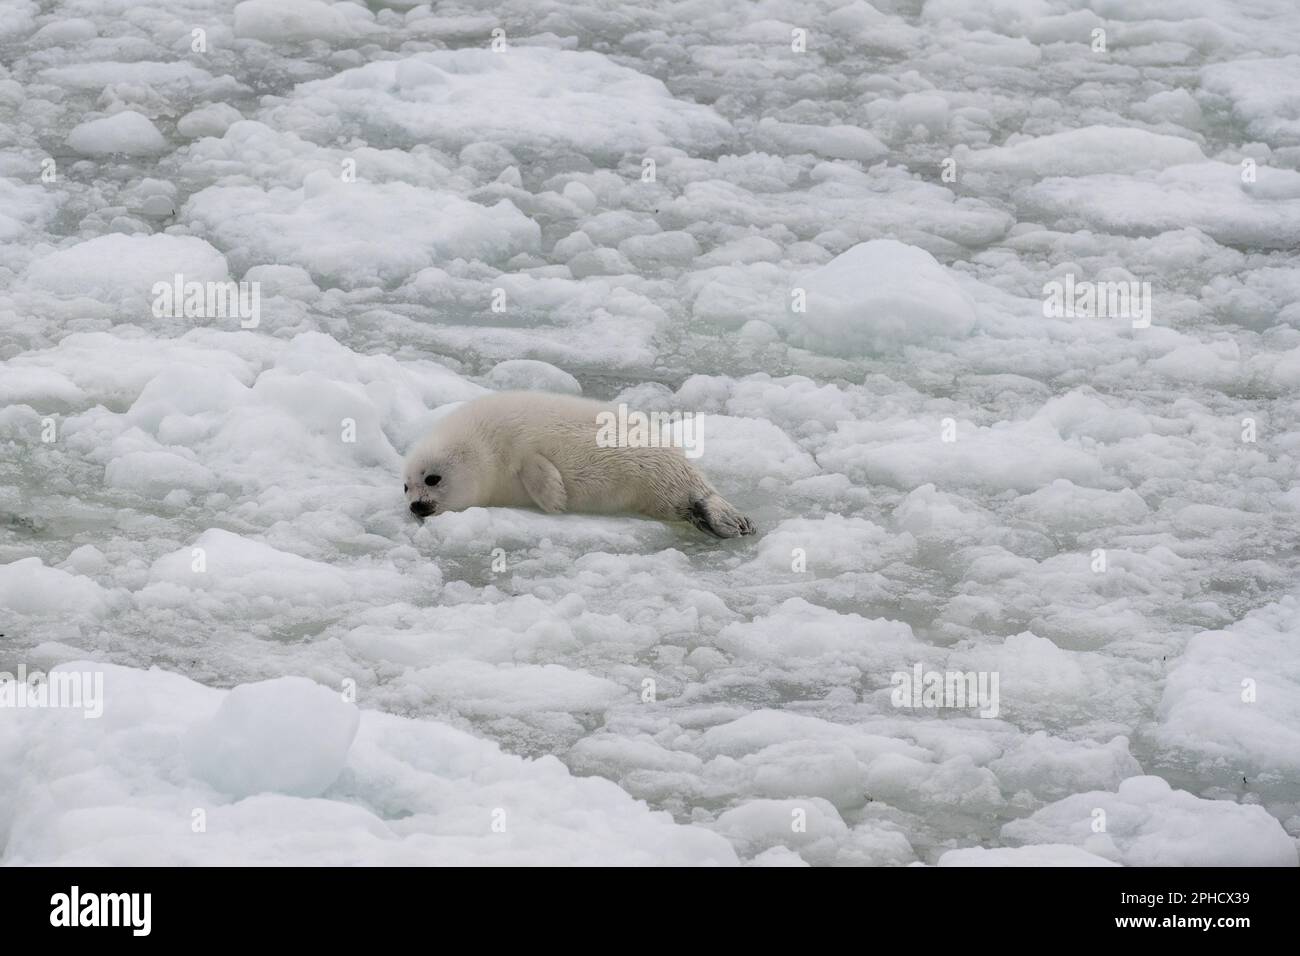 Un petit phoque du Groenland à couche blanche ou un phoque commun flottant sur de la neige blanche et de la glace à lamelles. Le phoque gris sauvage a de longs whiskers, un visage triste, une fourrure de couleur claire Banque D'Images